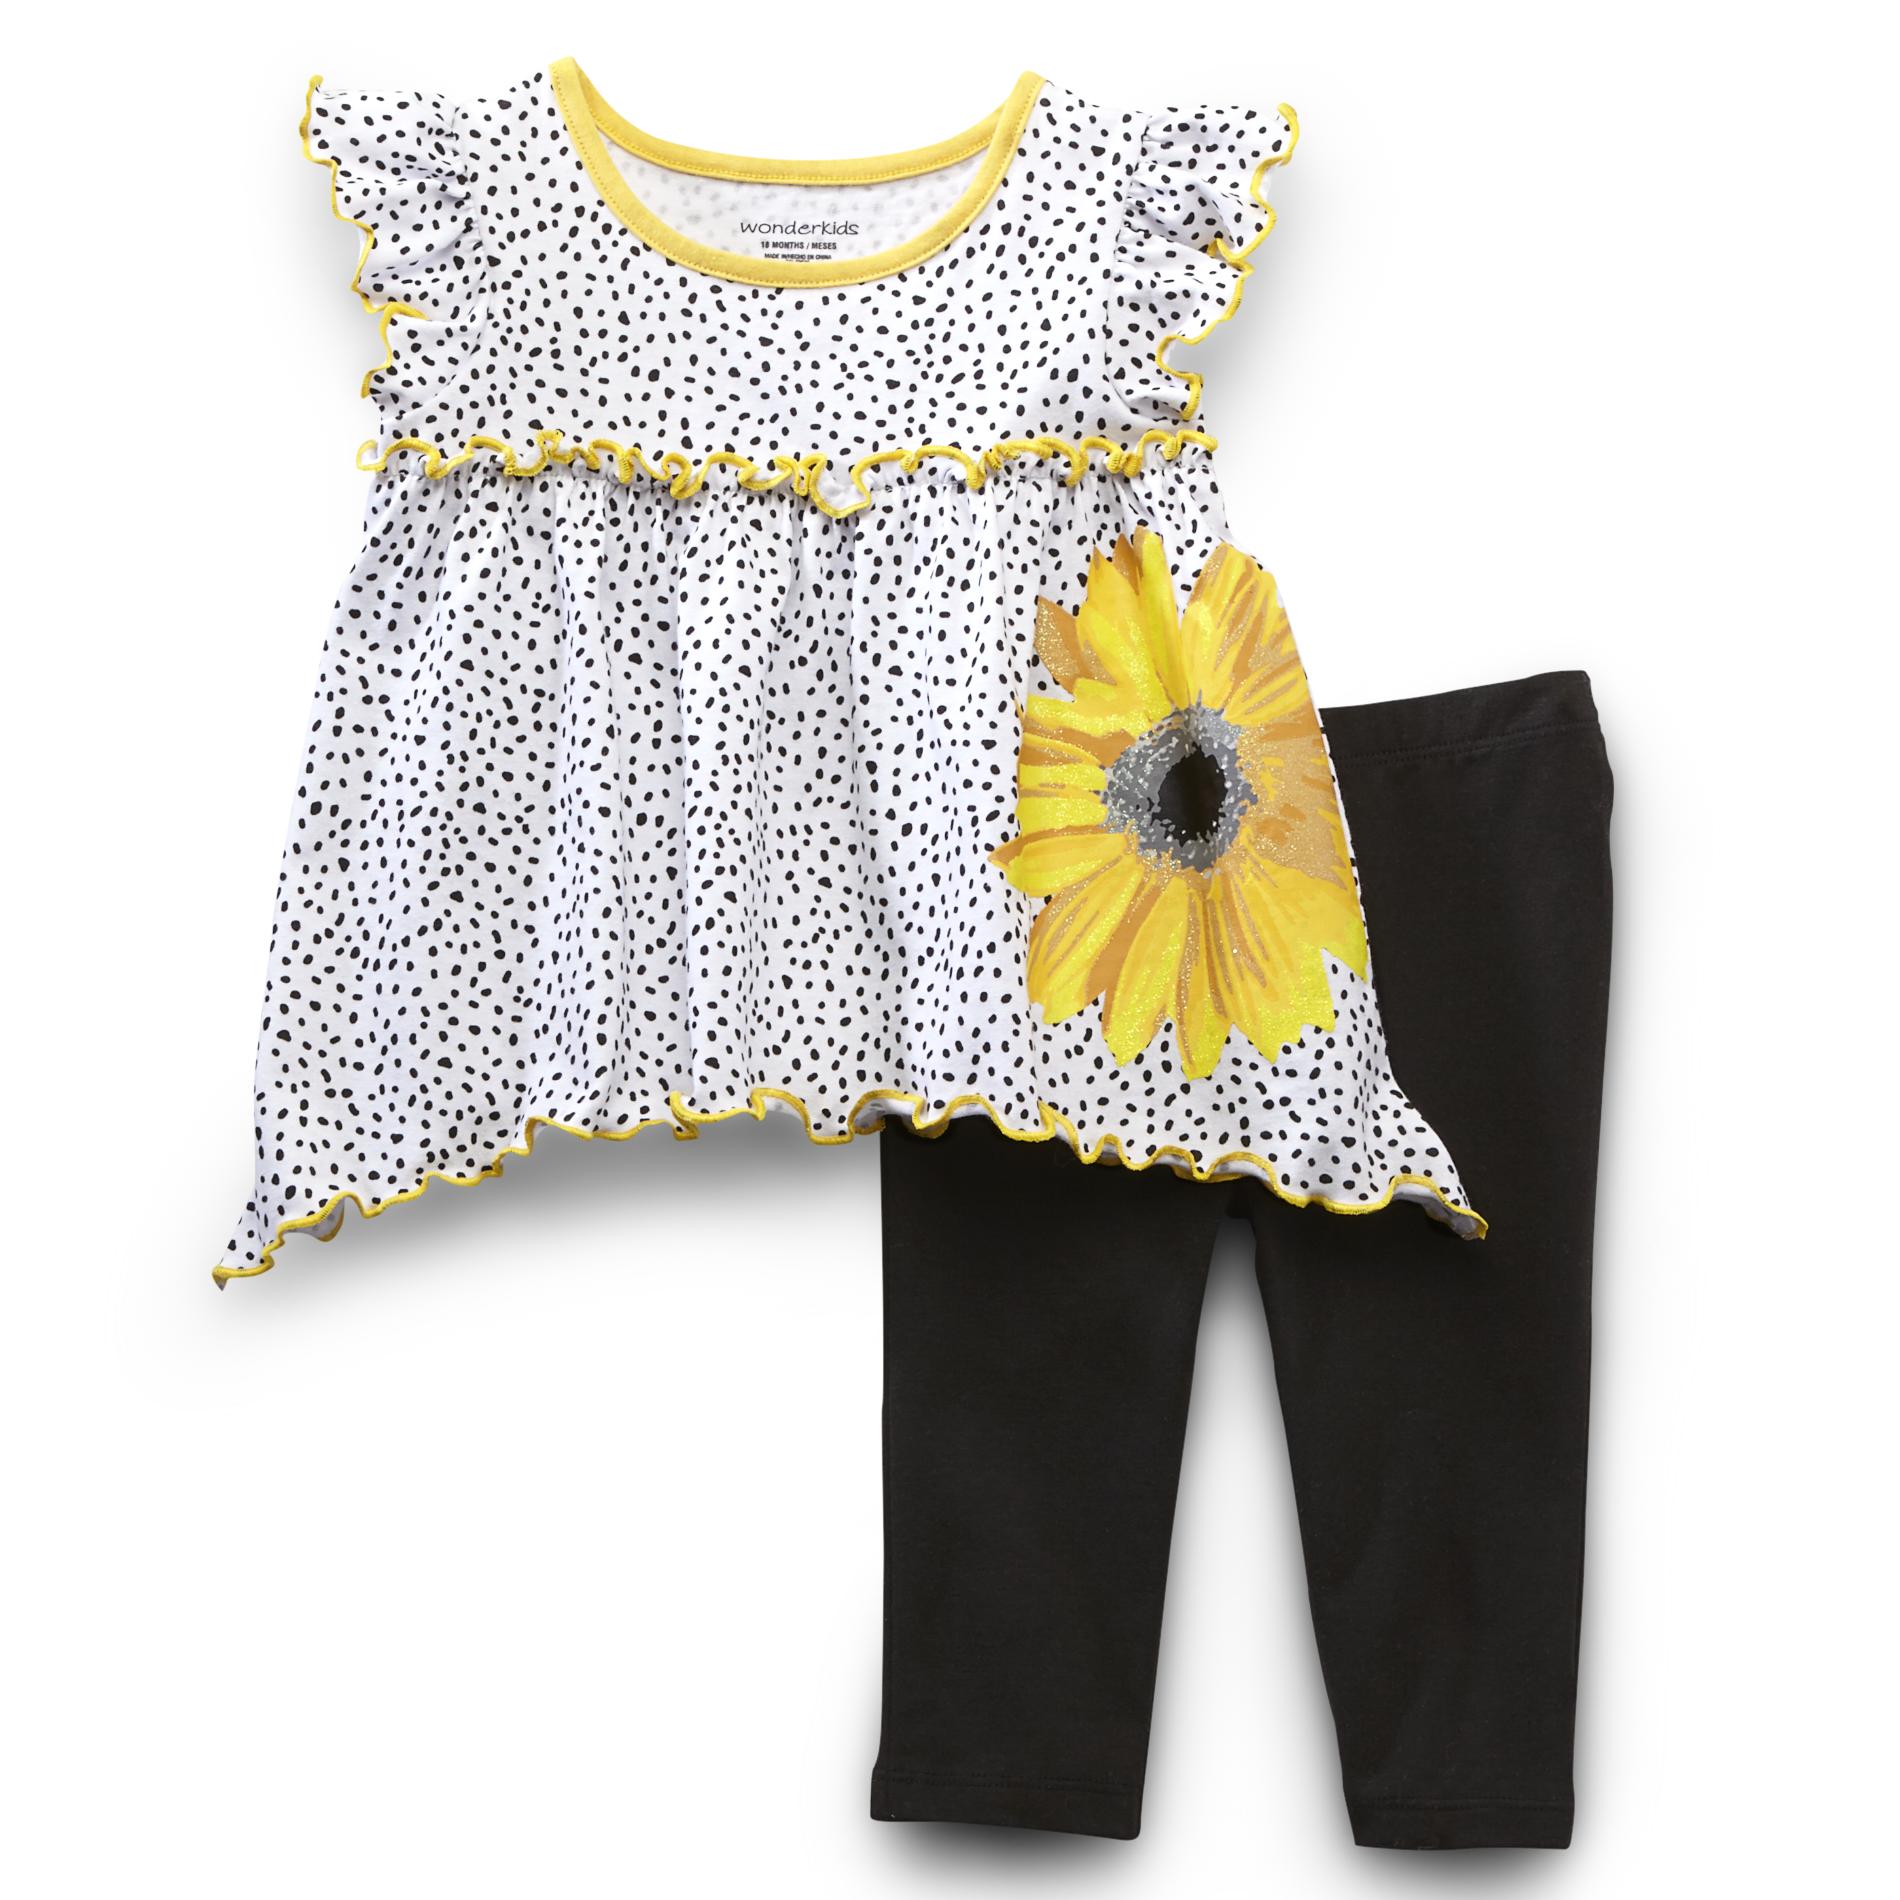 WonderKids Infant & Toddler Girl's Tunic Top & Leggings - Sunflower